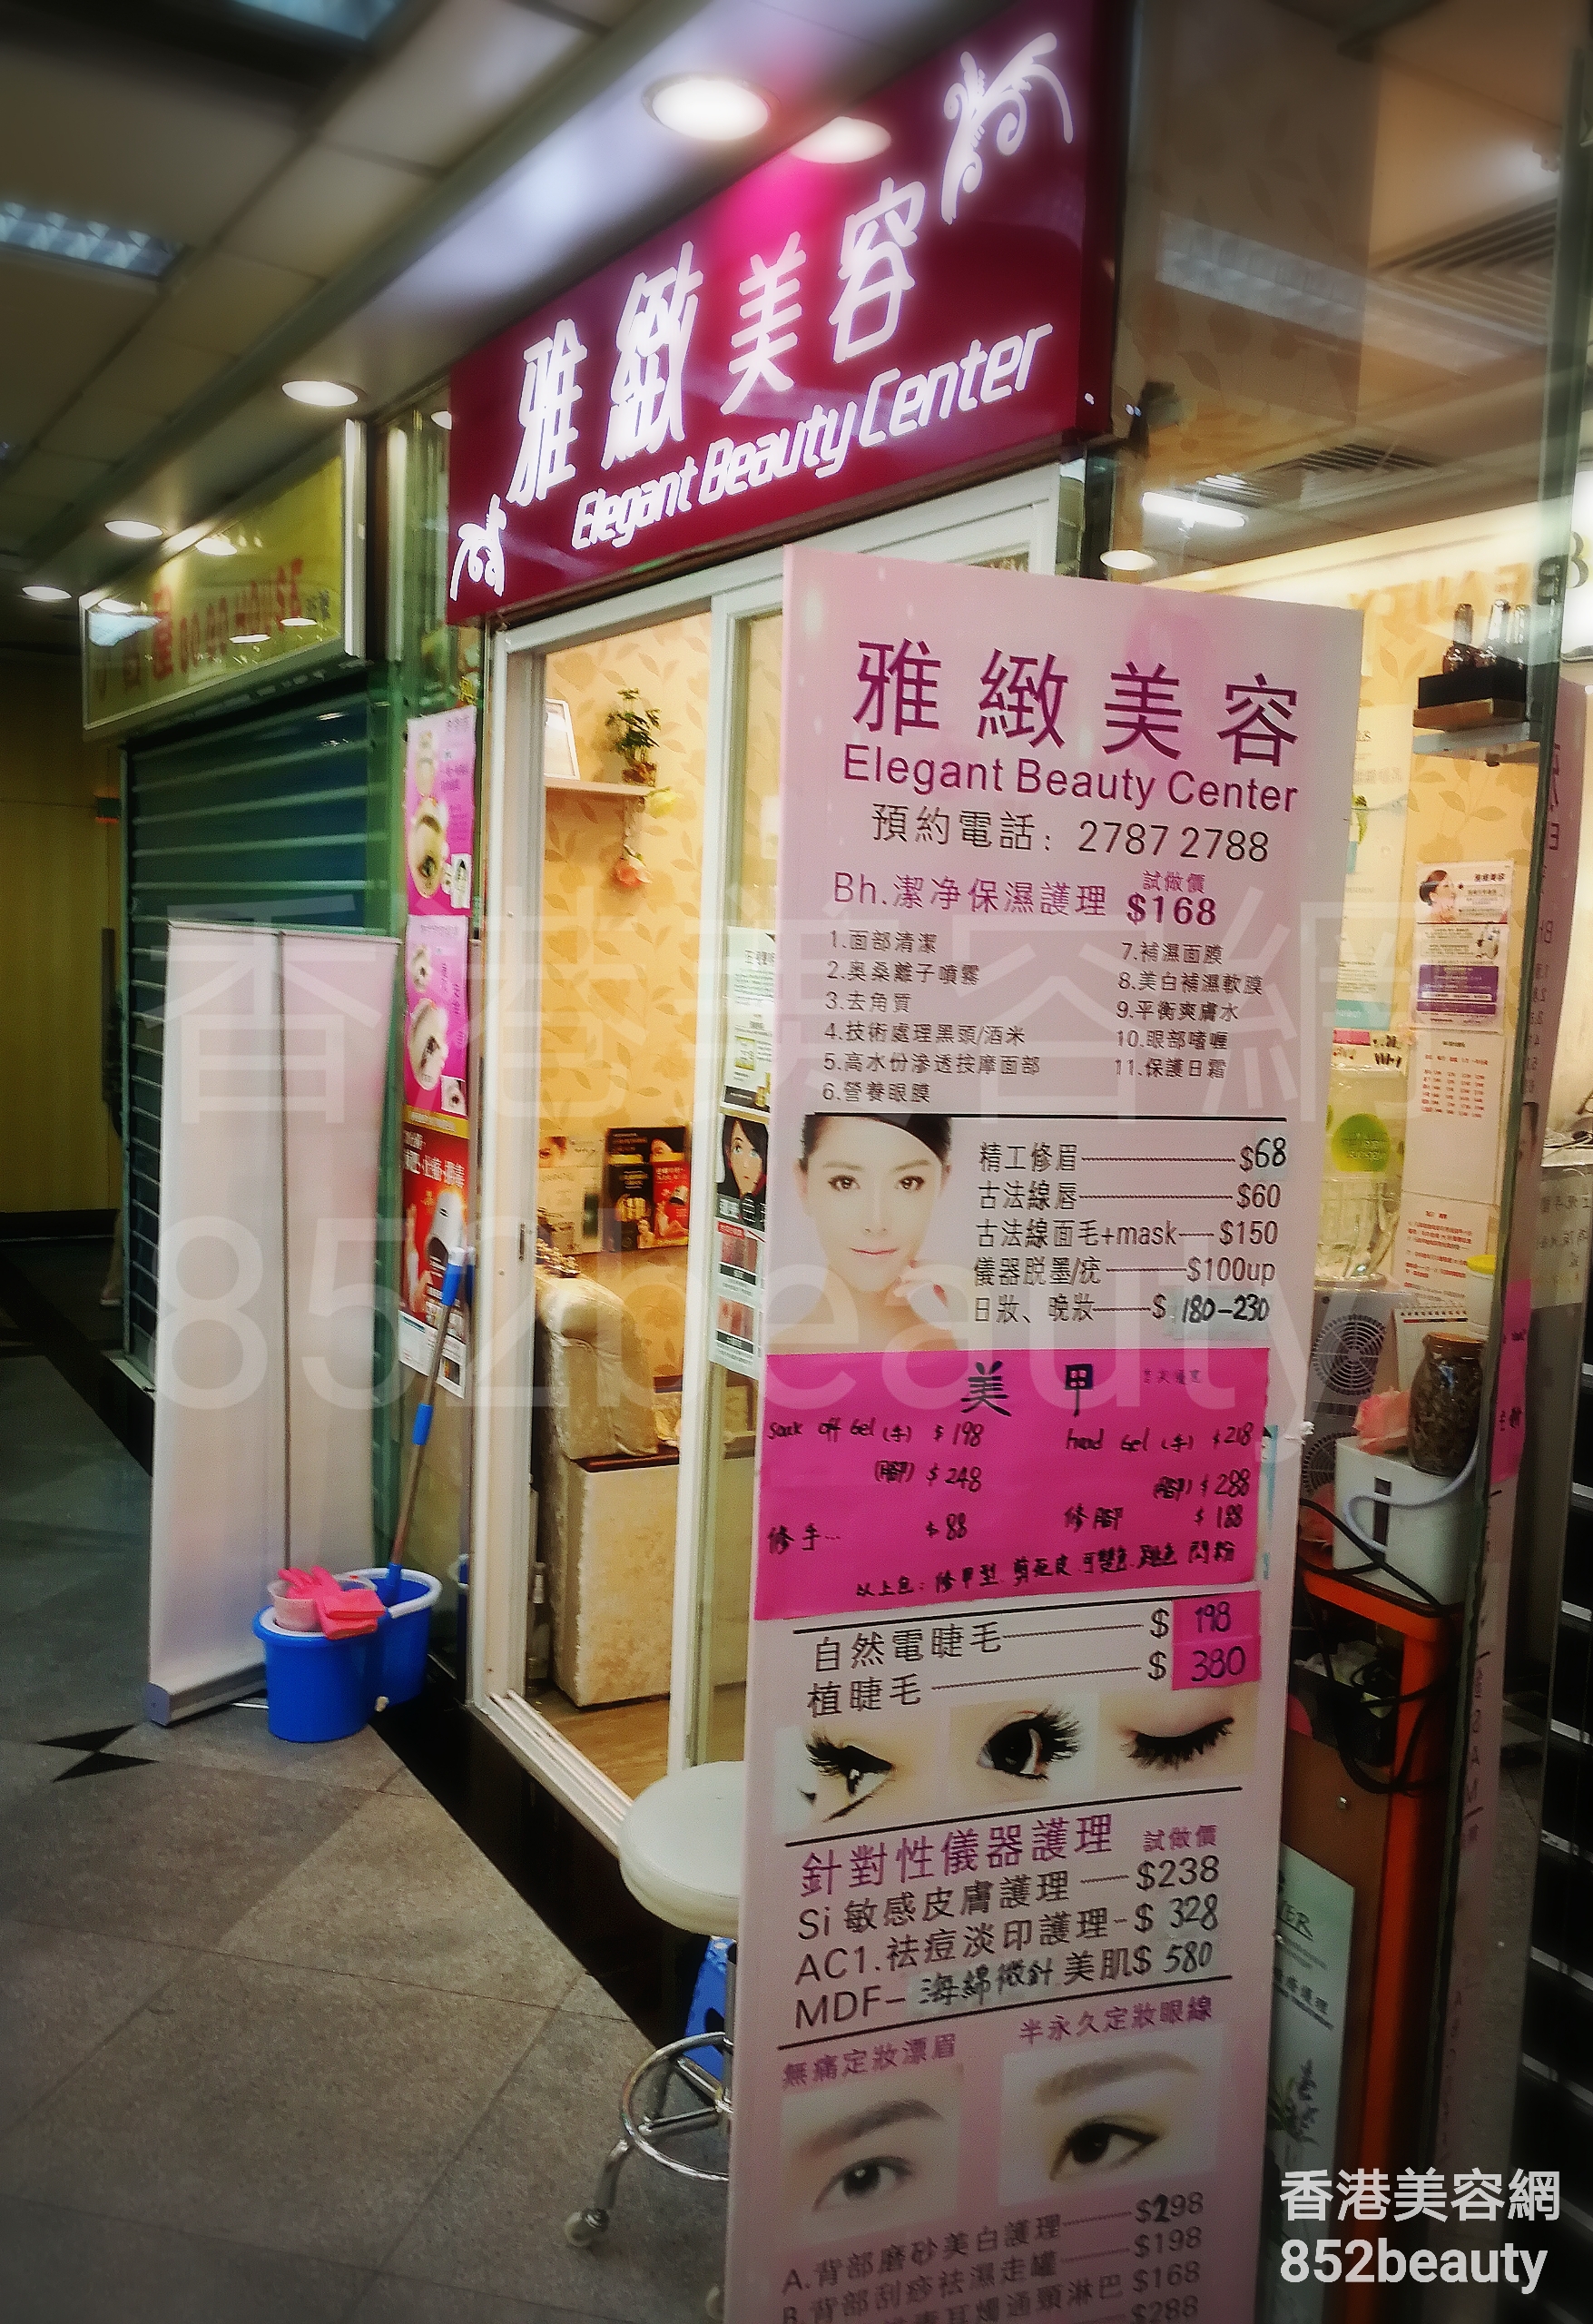 香港美容網 Hong Kong Beauty Salon 美容院 / 美容師: 雅緻美容